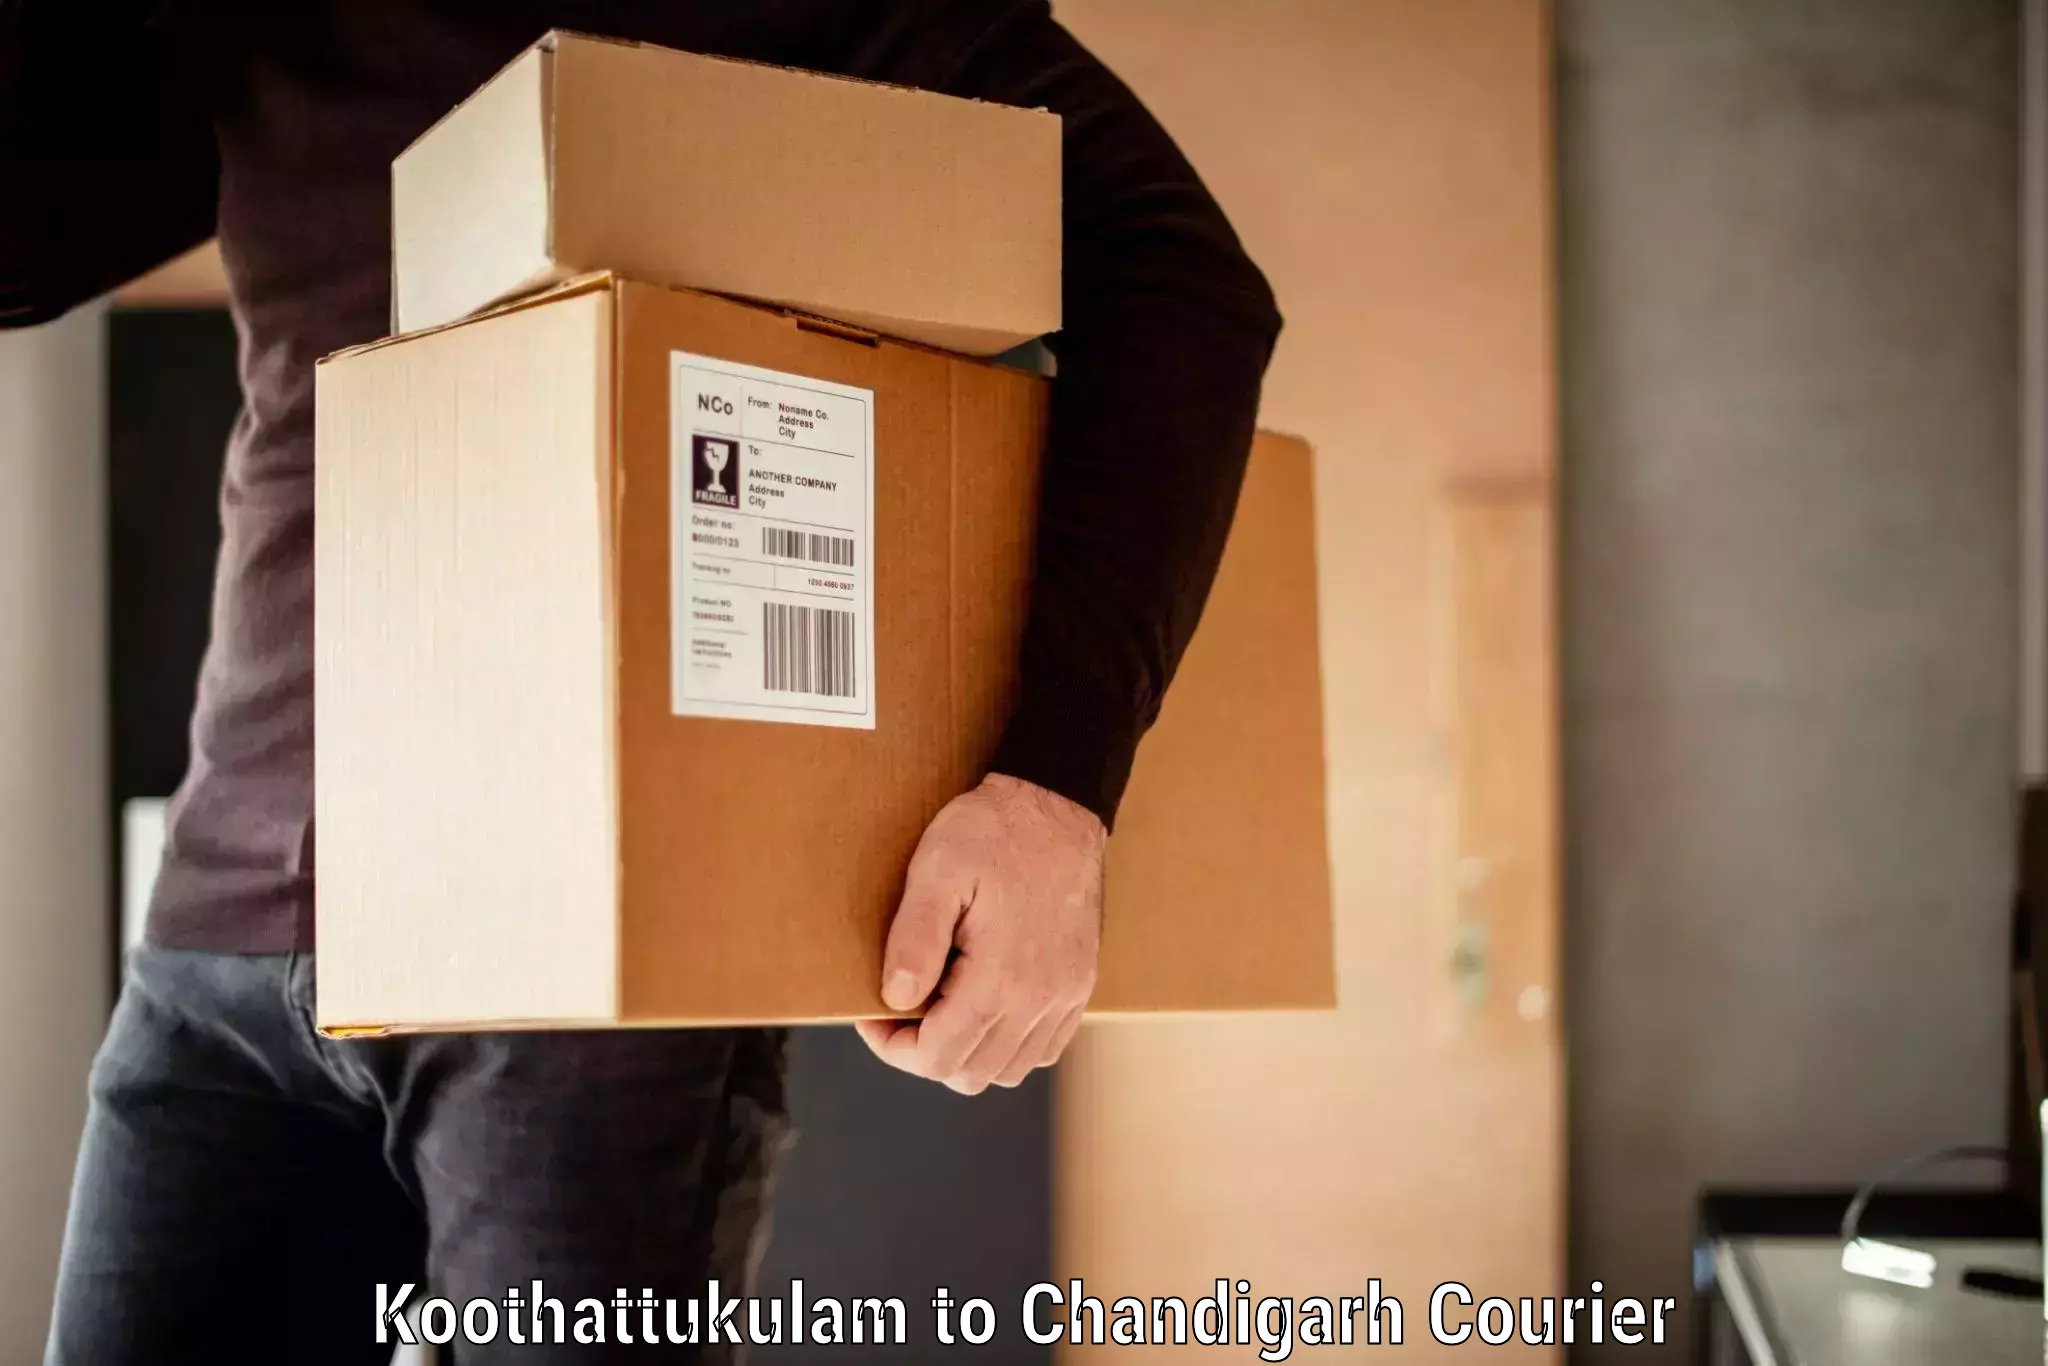 Baggage delivery estimate Koothattukulam to Chandigarh